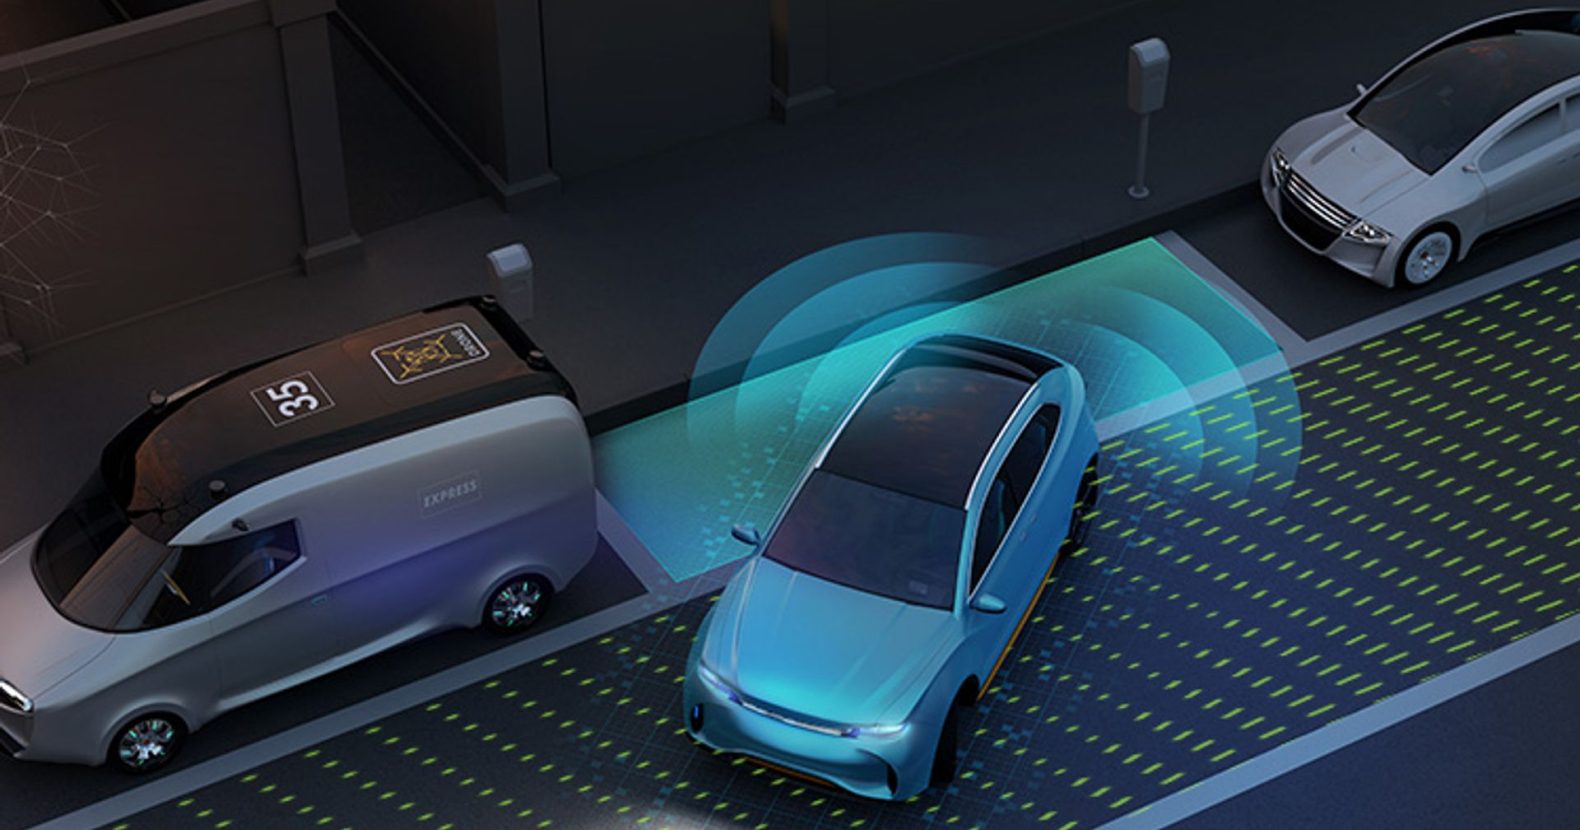  3D autonomous parking visualization using parking assistance image recognition.